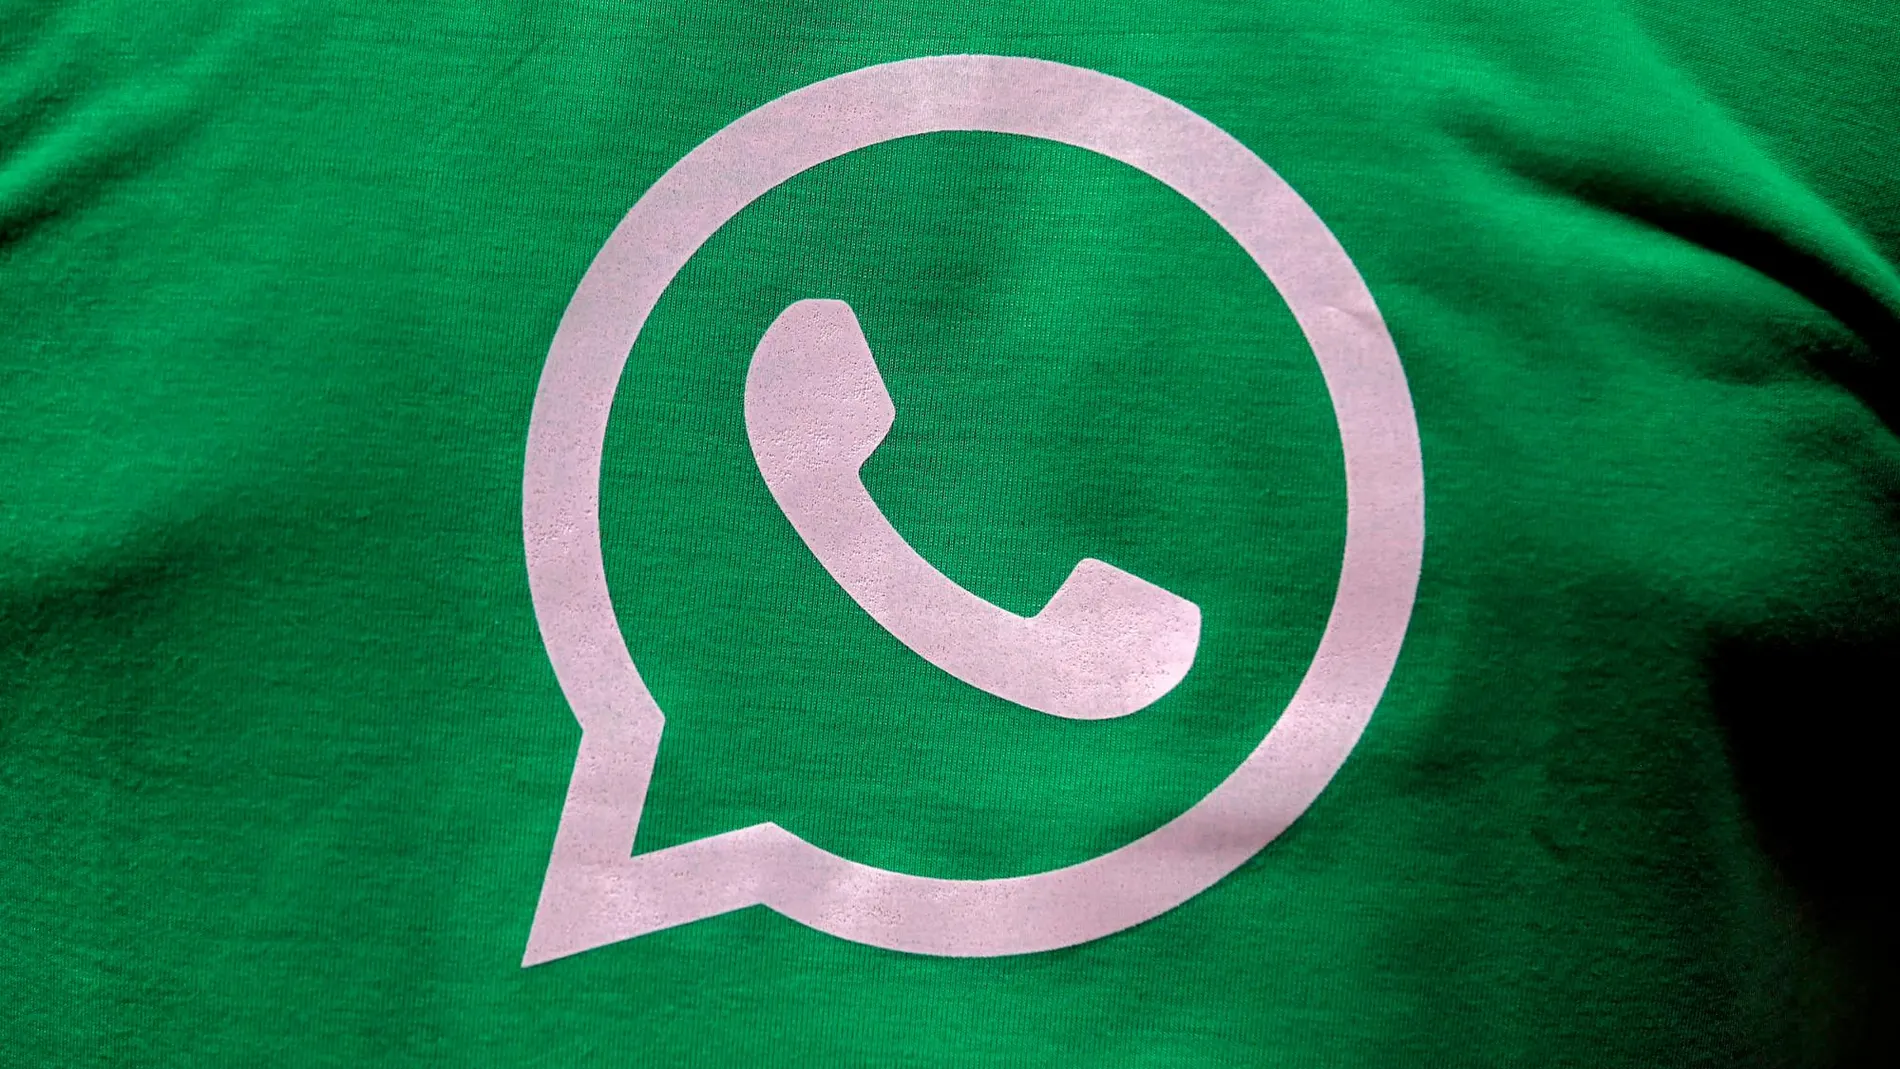 Podrás usar WhatsApp en hasta cuatro dispositivos diferentes